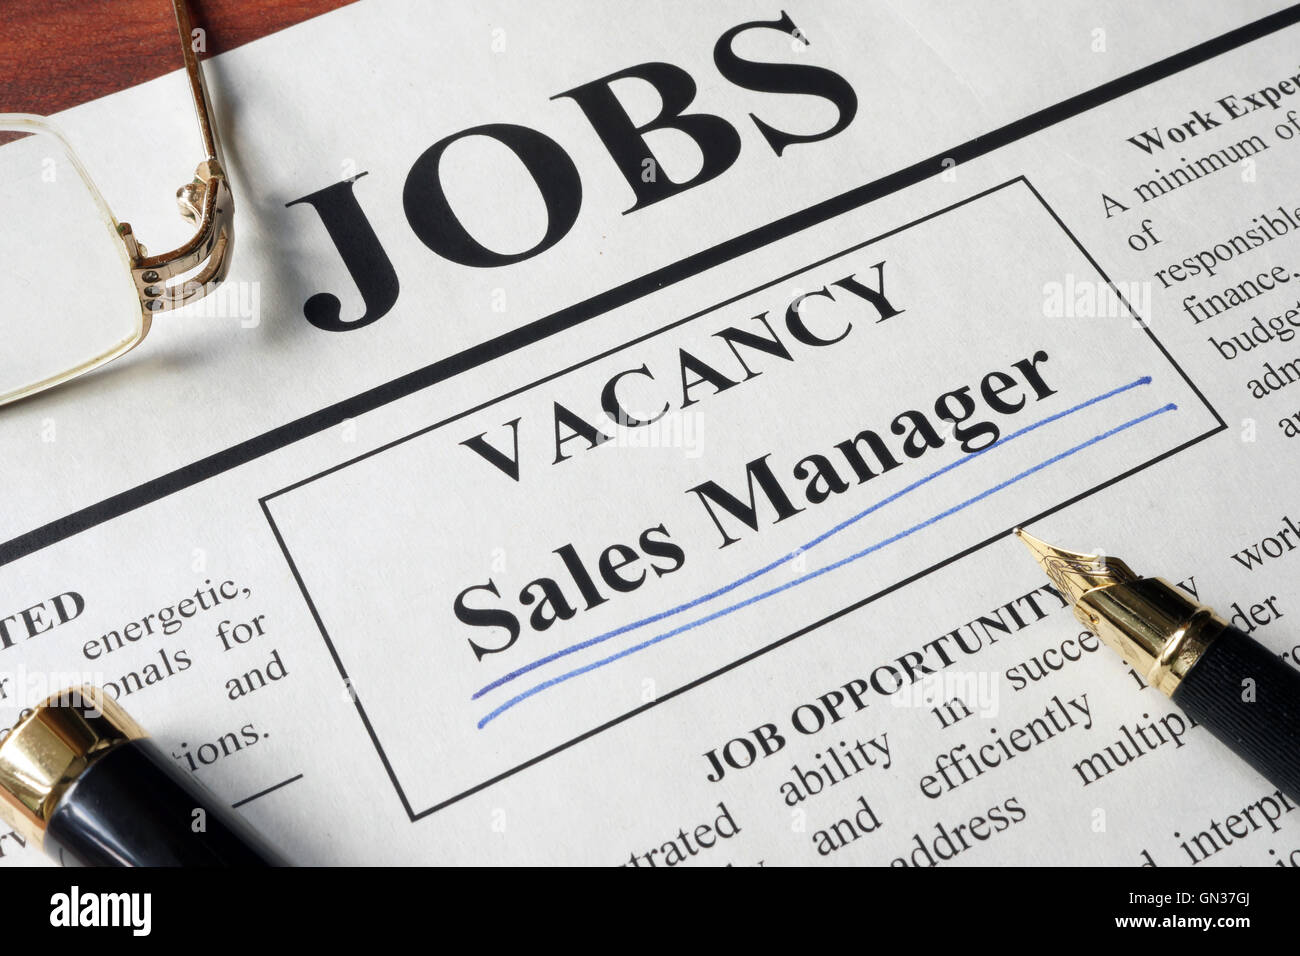 Zeitung mit Anzeigen für Stellenausschreibung Verkaufsleiter. Beschäftigung-Konzept. Stockfoto